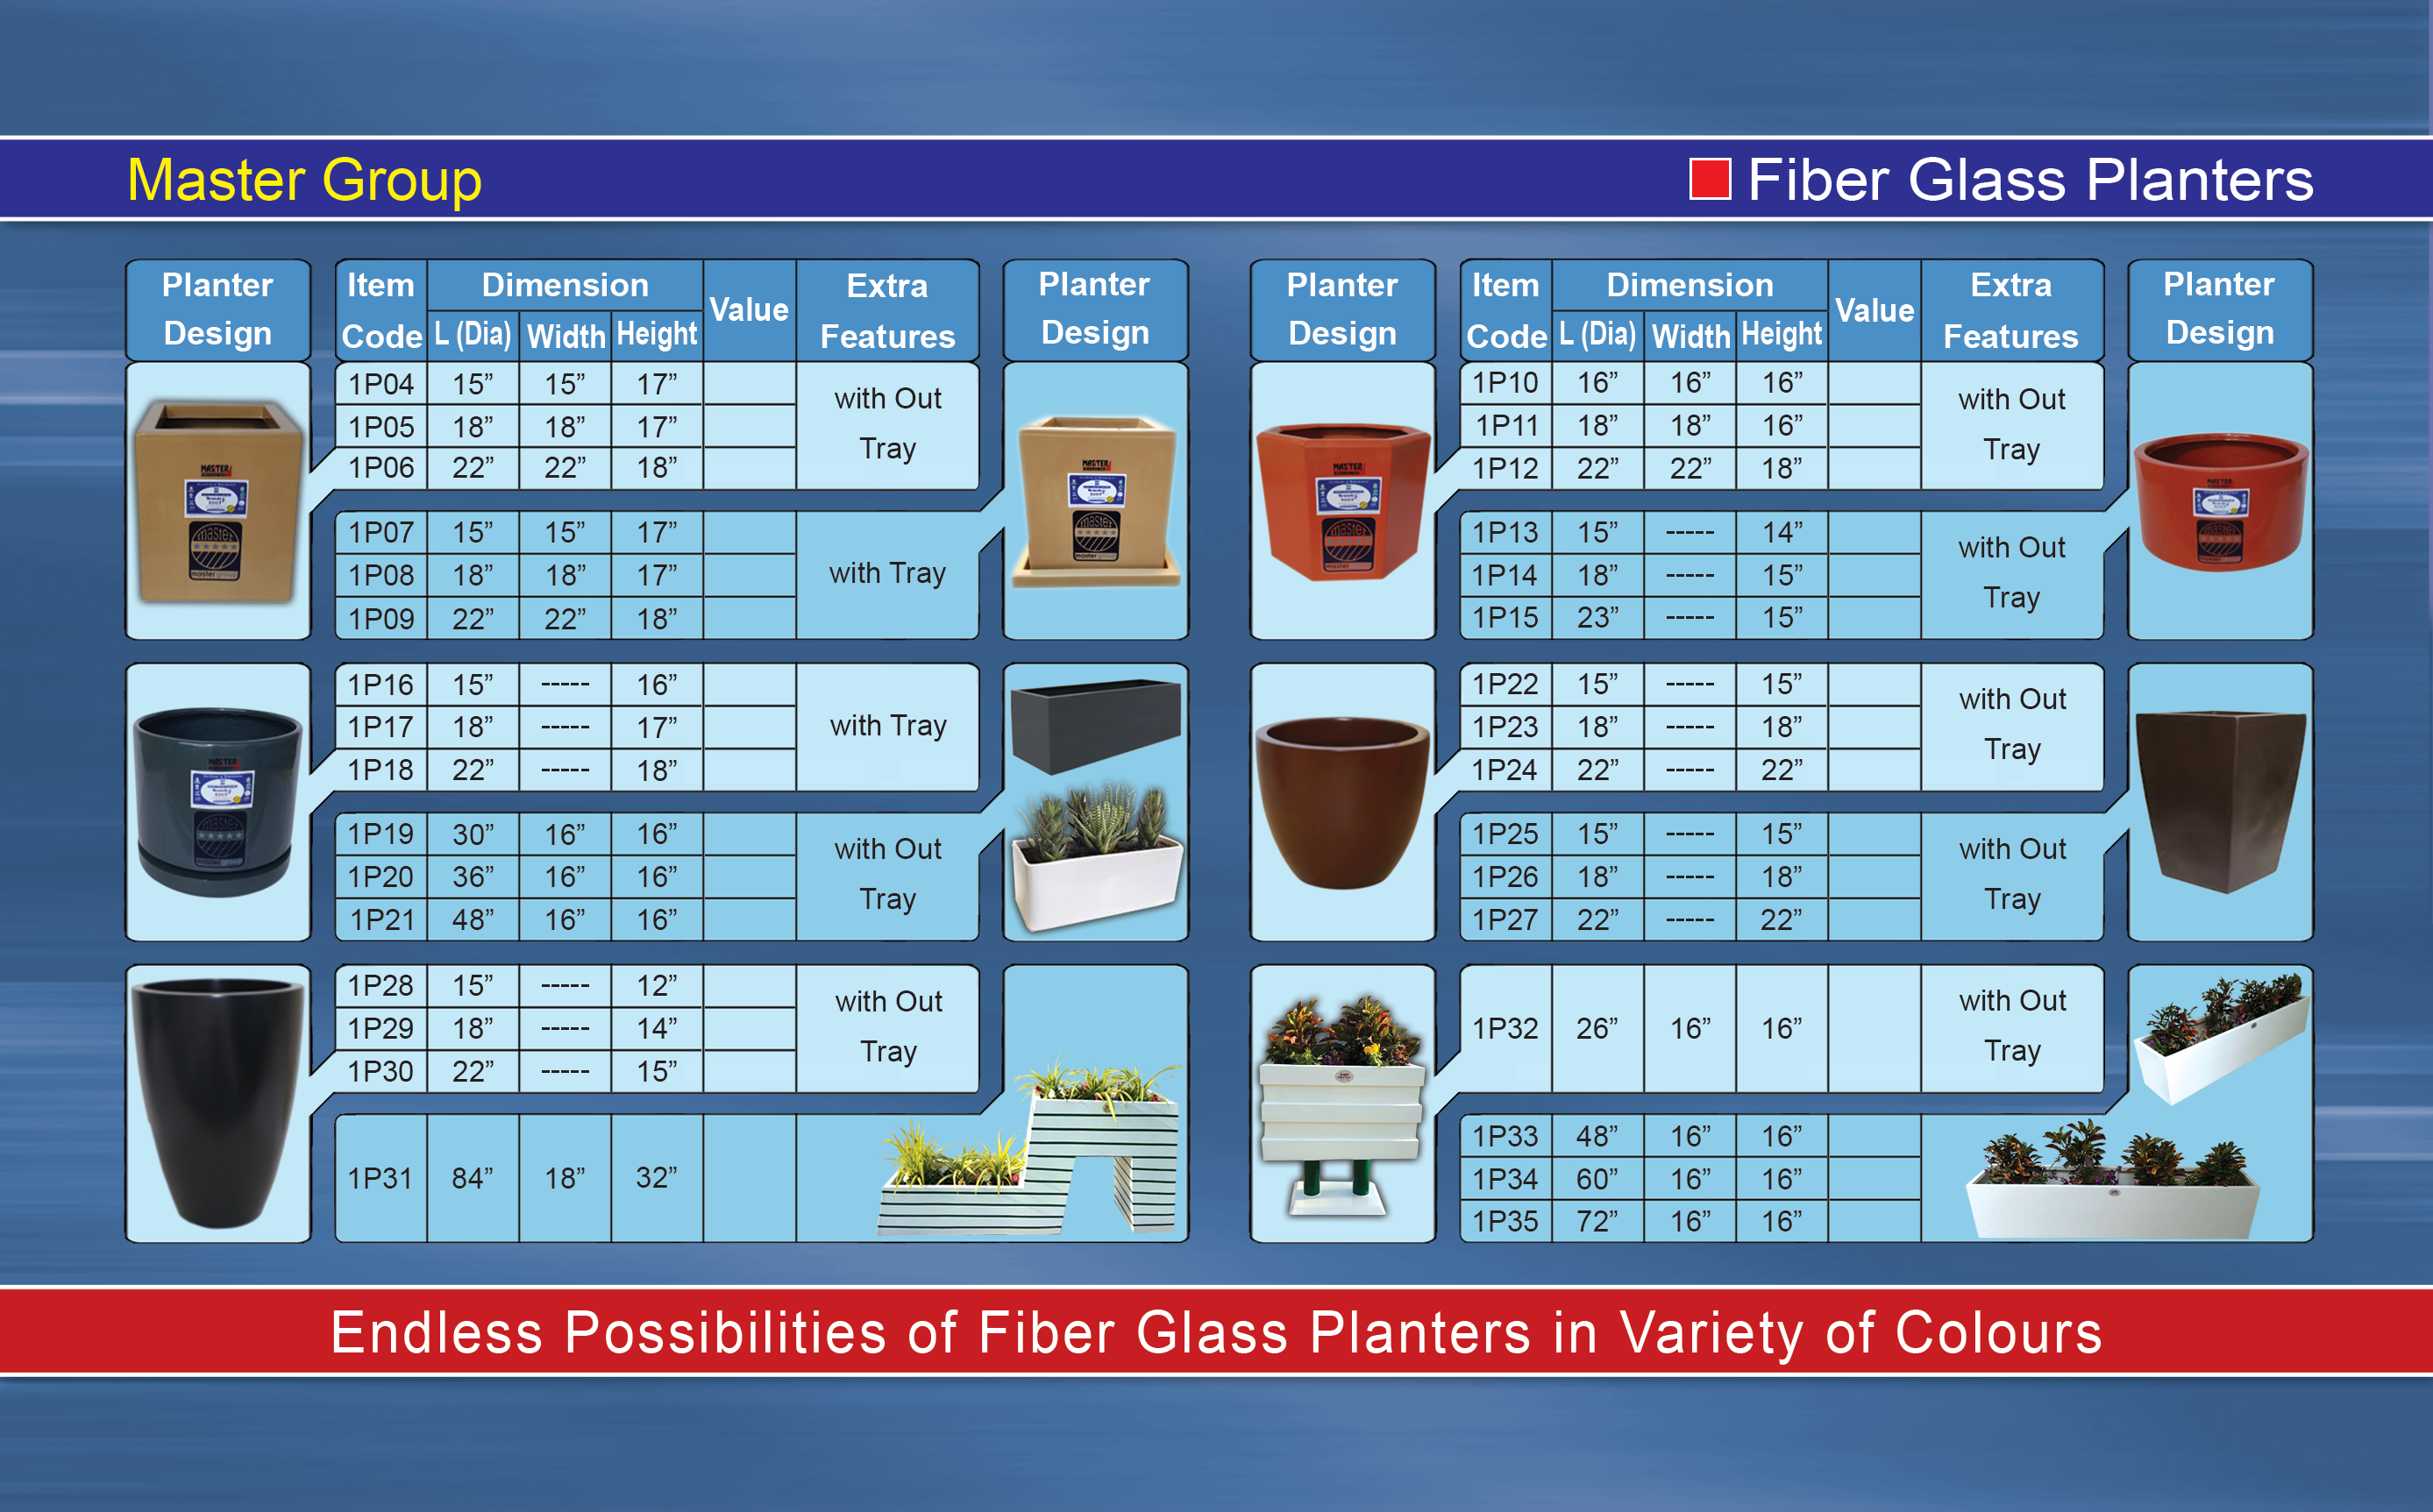 Fiber Glass Planters